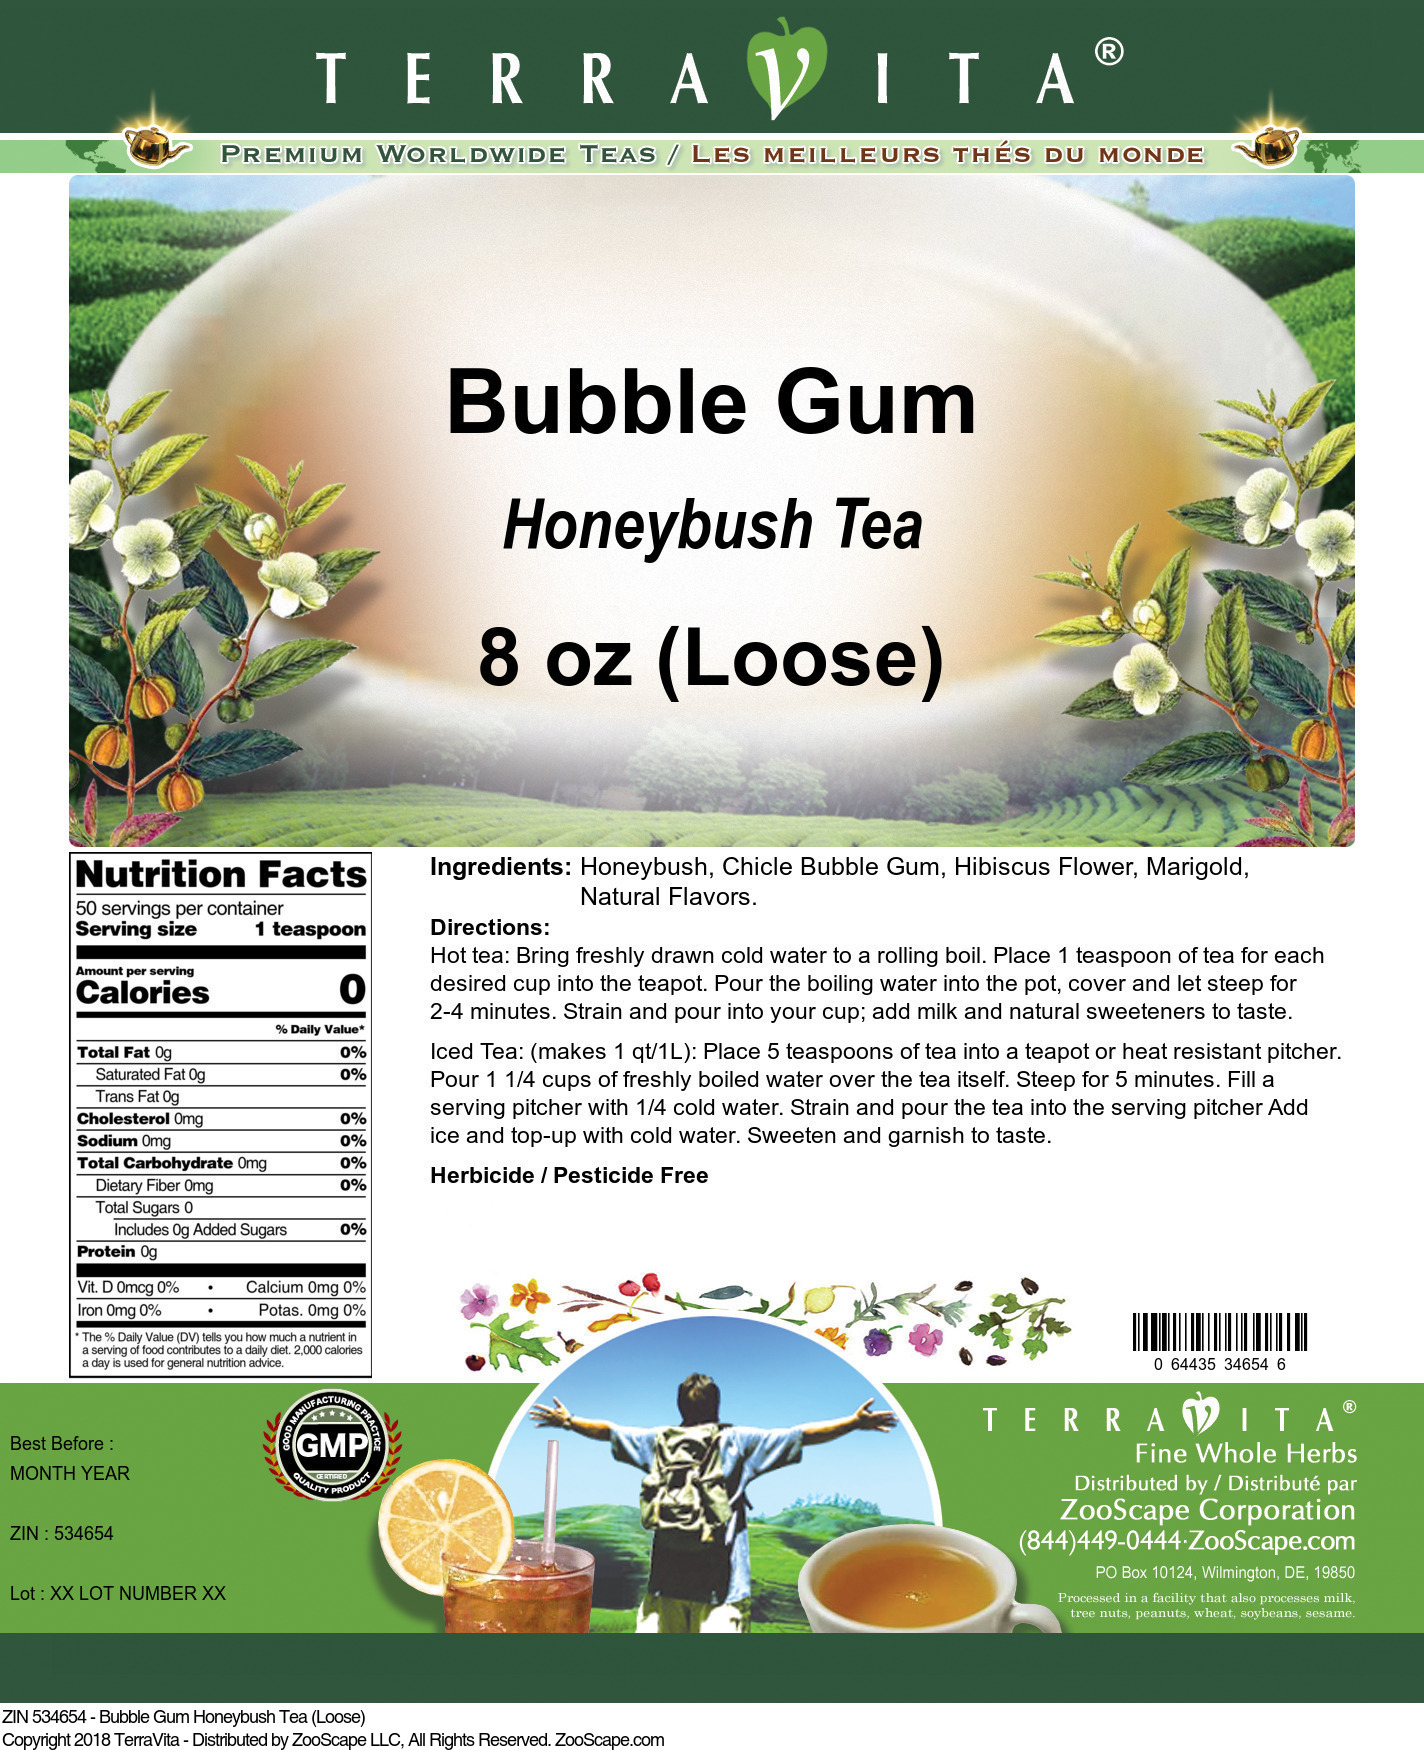 Bubble Gum Honeybush Tea (Loose) - Label